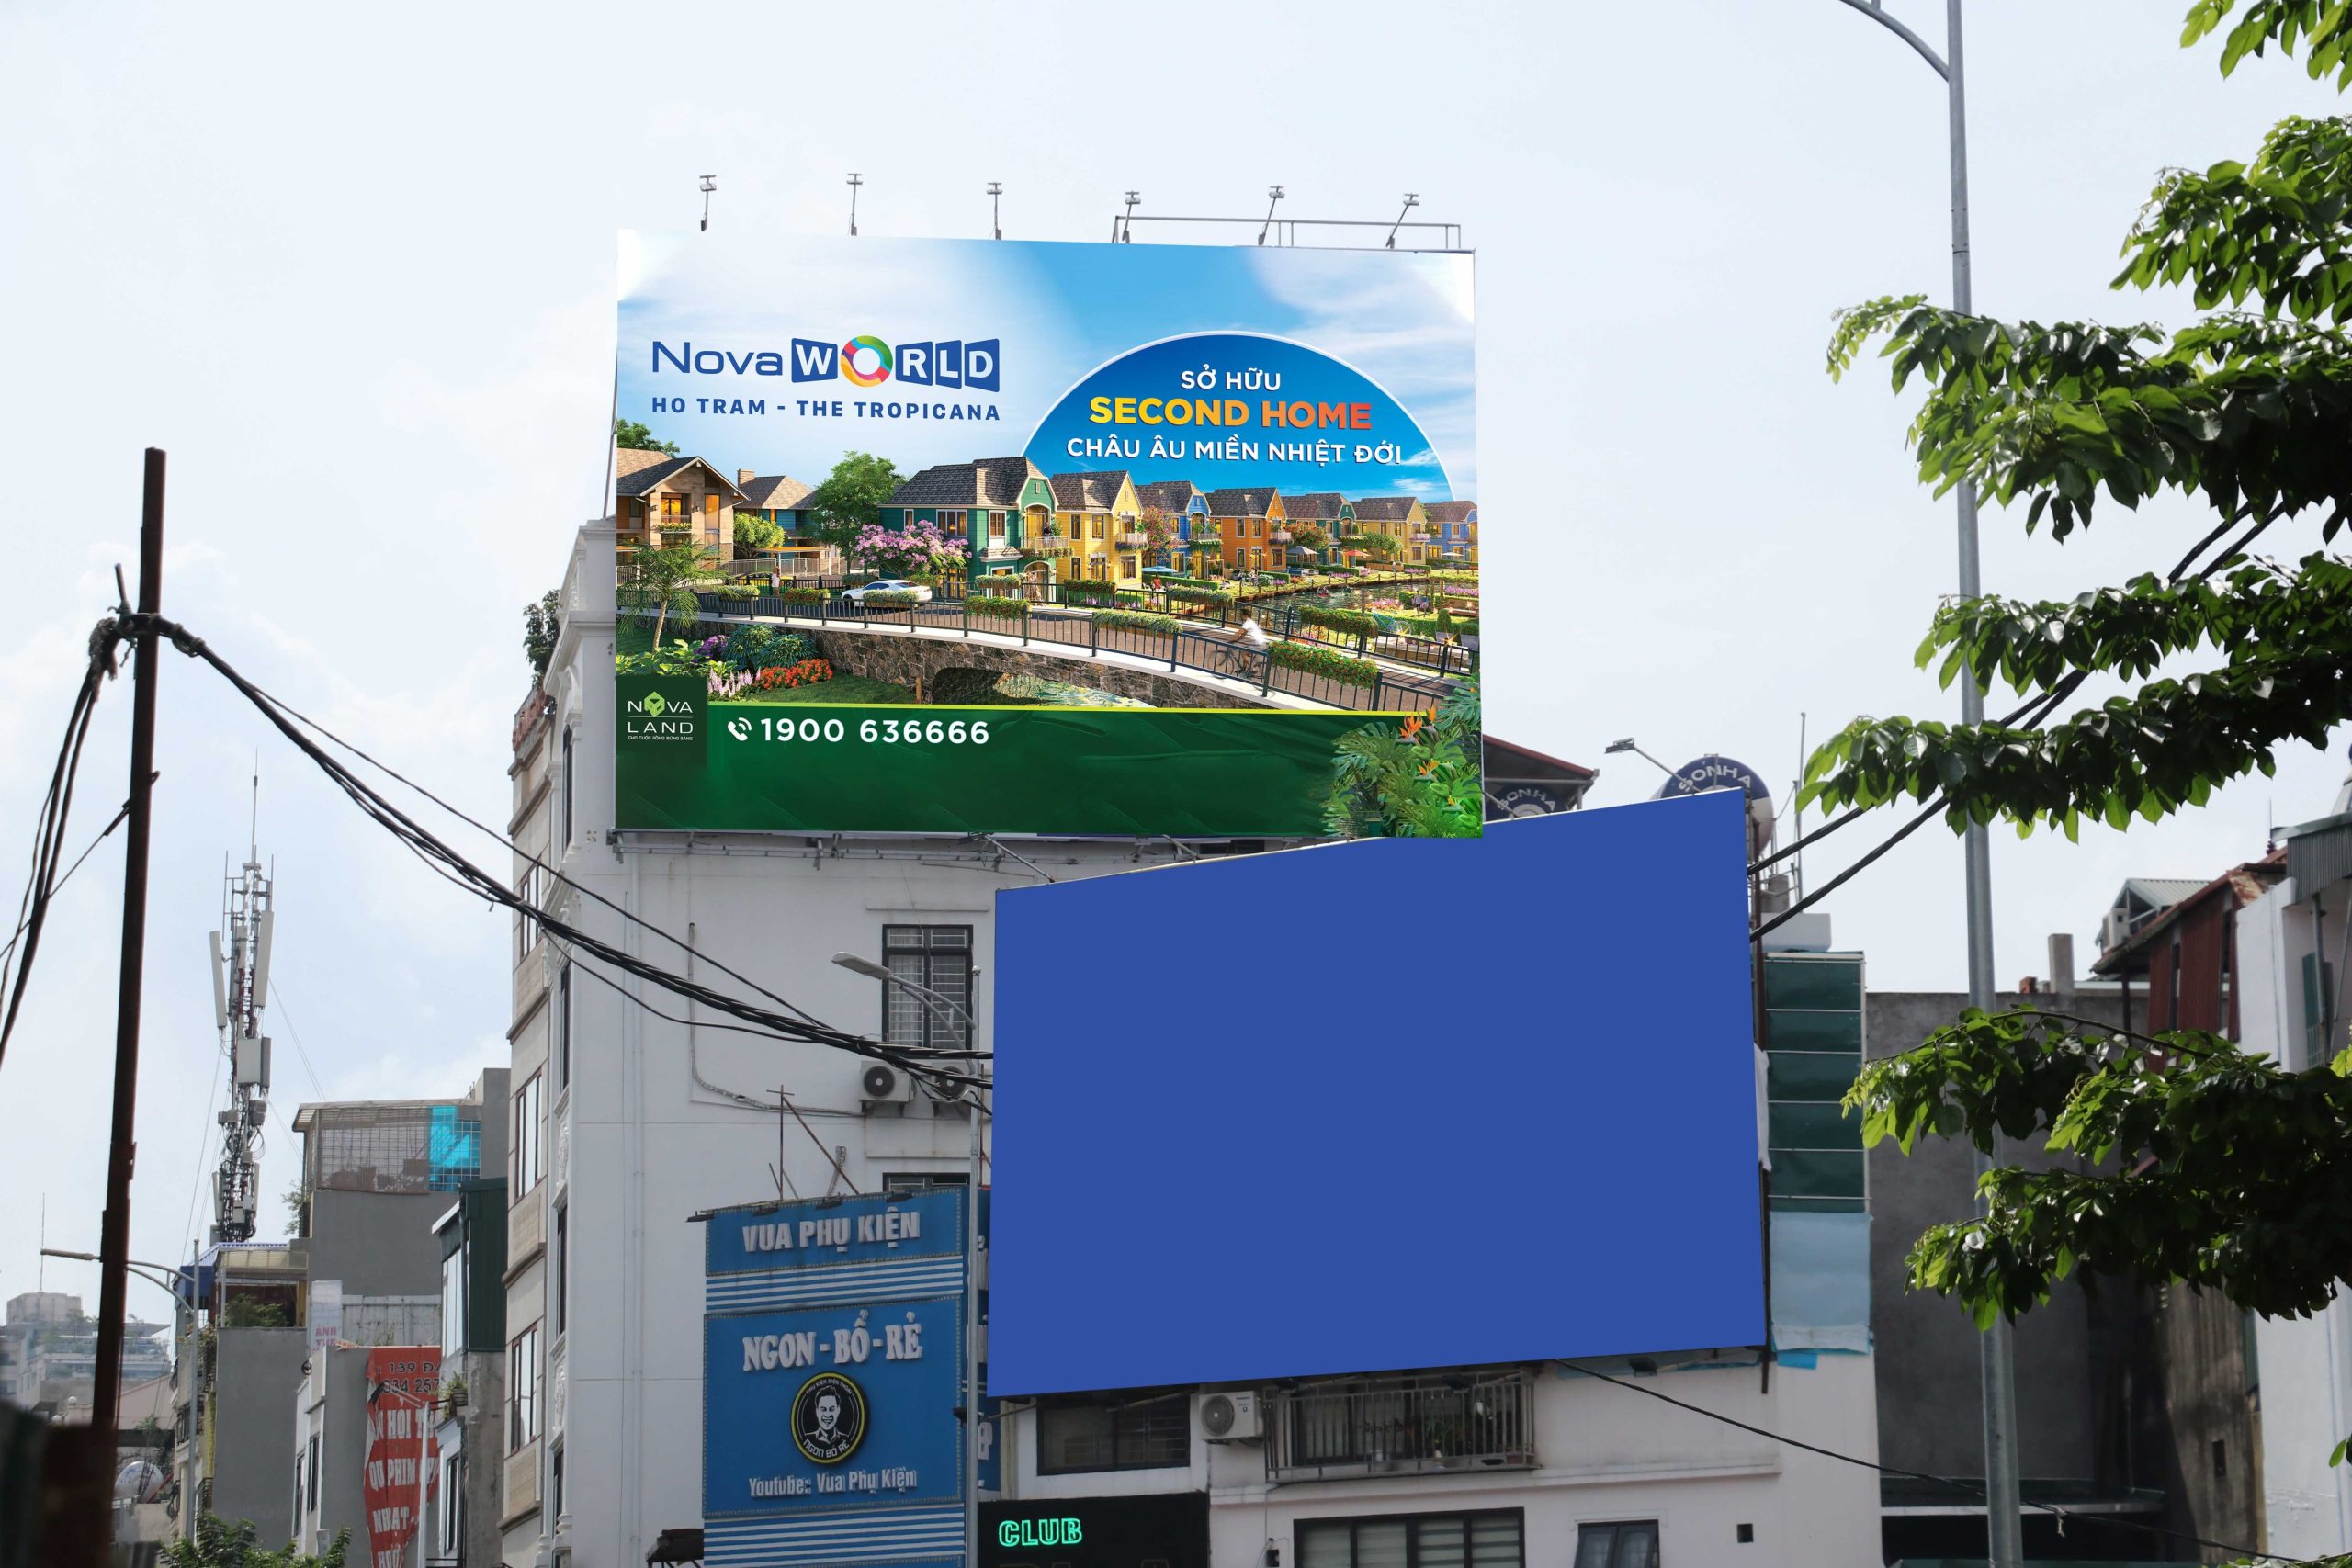 Bảng quảng cáo nội đô – Hà Nội - Hai Bà Trưng - HBTOT1